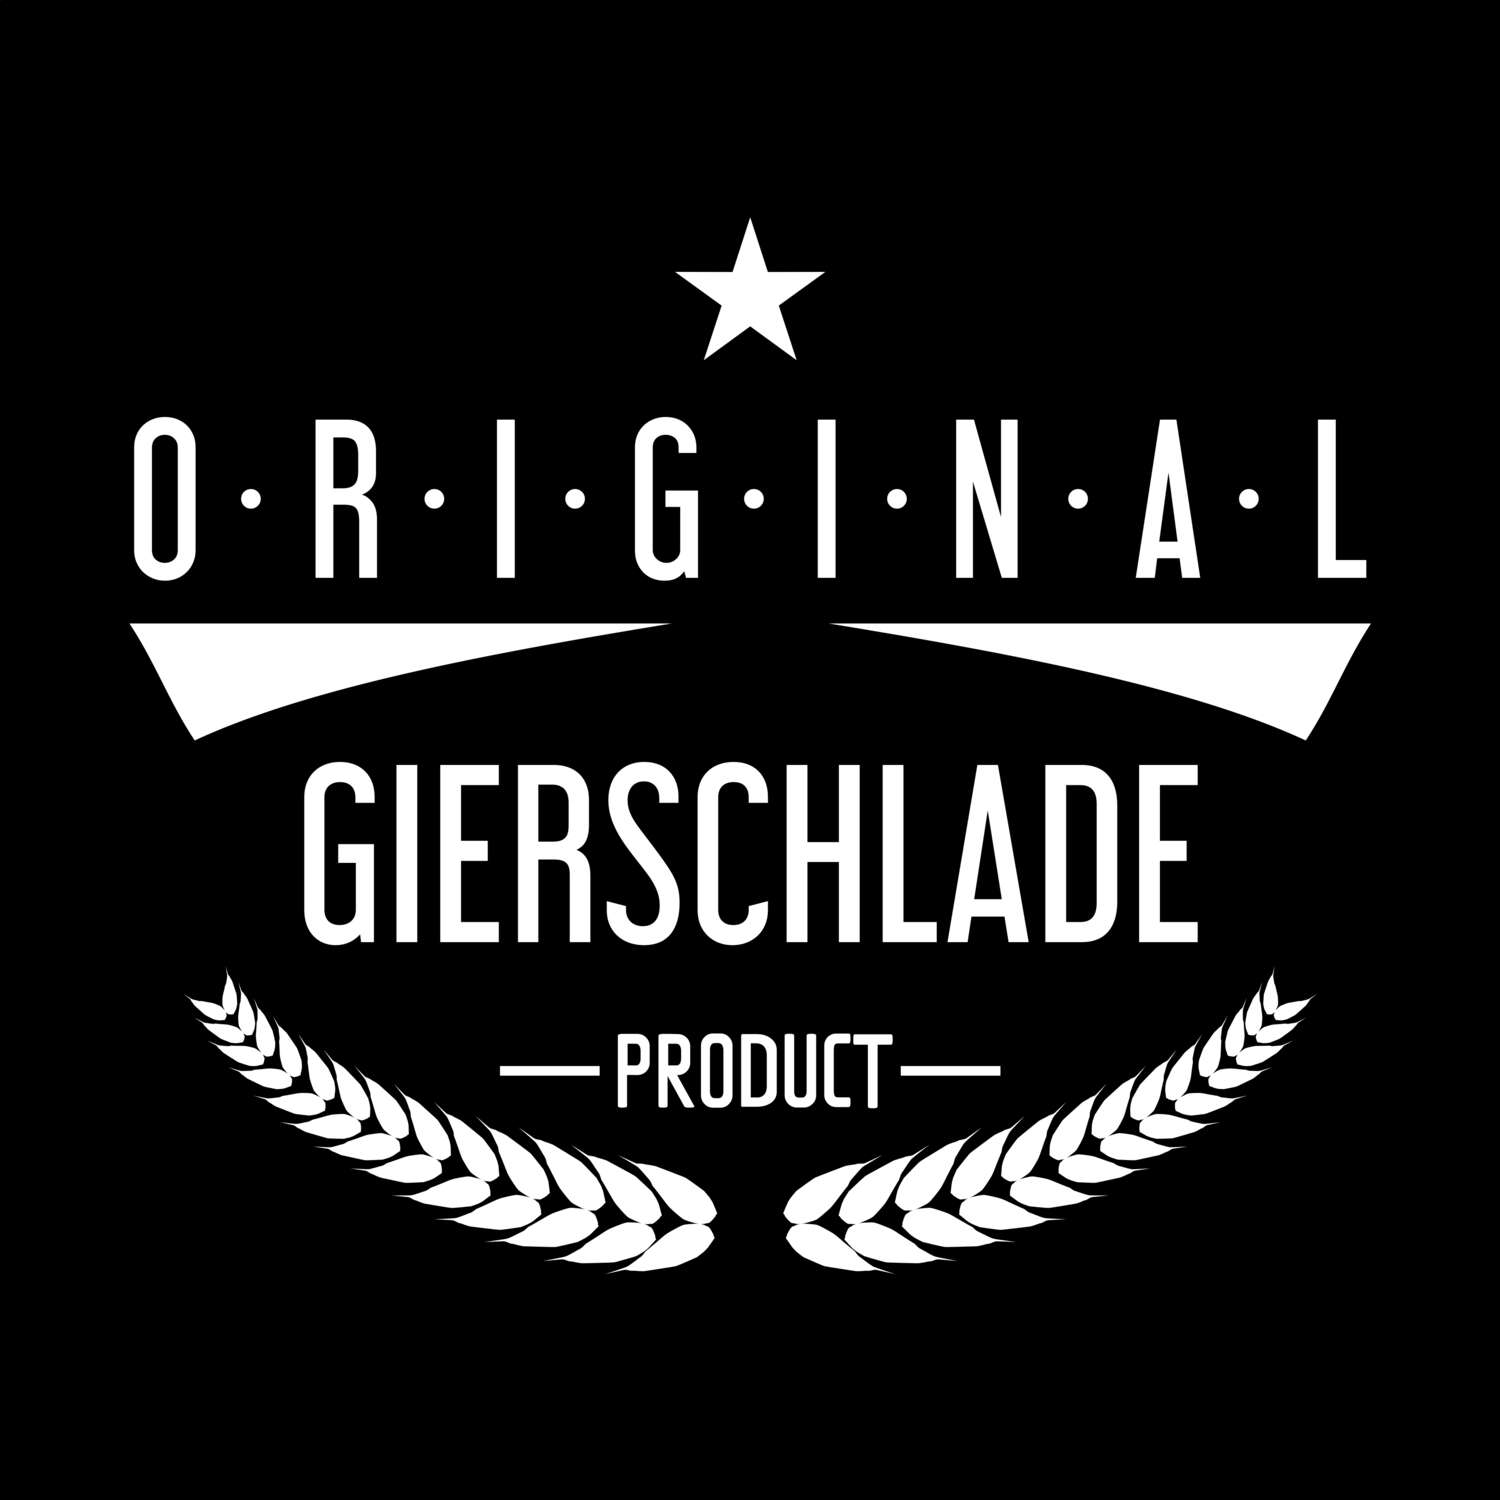 Gierschlade T-Shirt »Original Product«